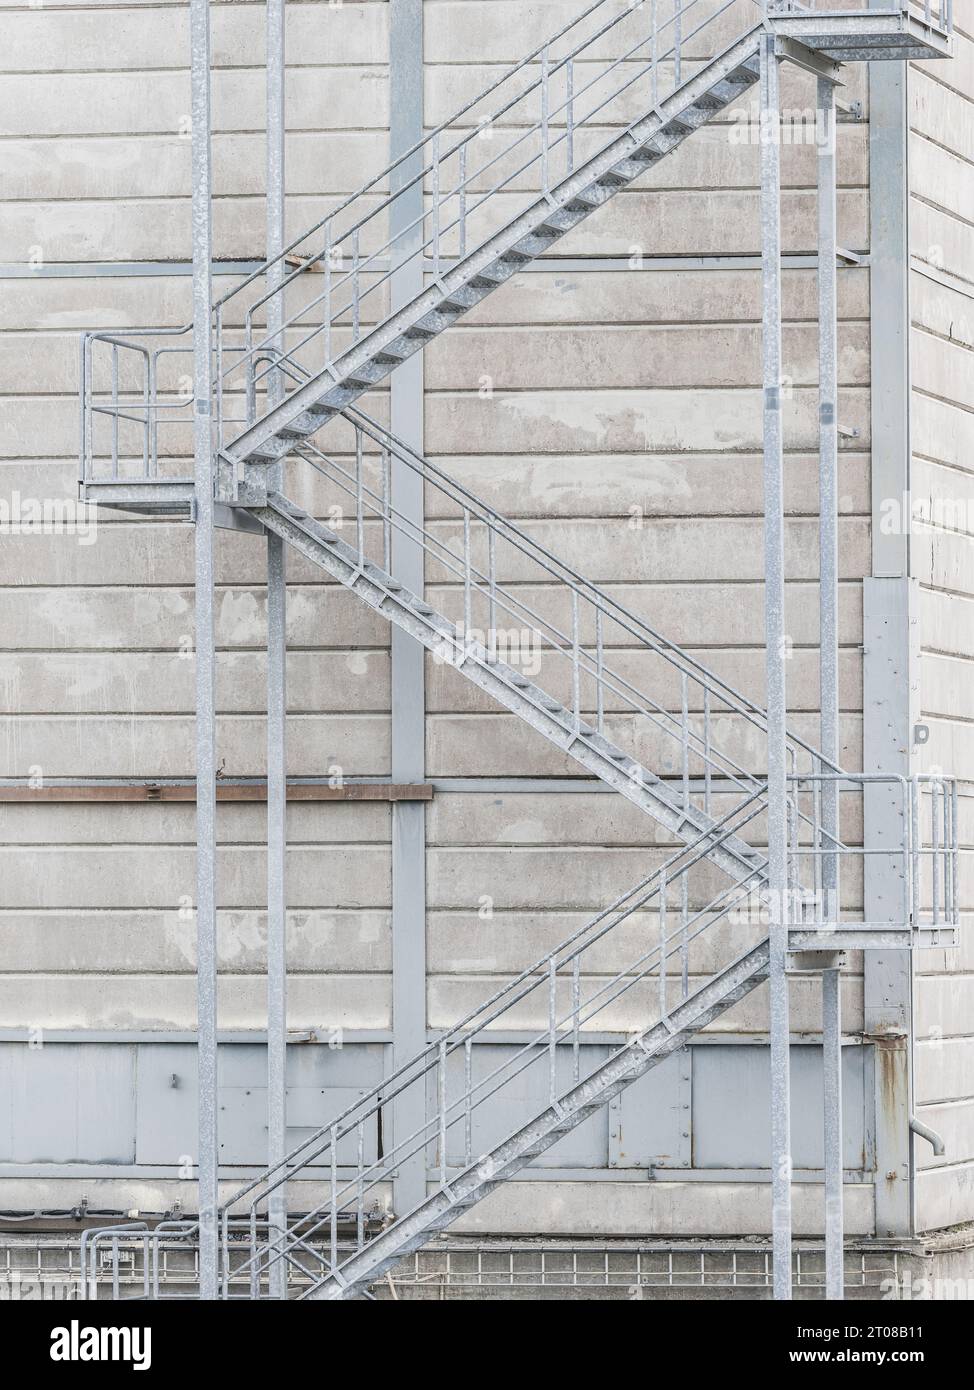 Escalier industriel dans la façade extérieure du bâtiment avec détail de tissu. Banque D'Images